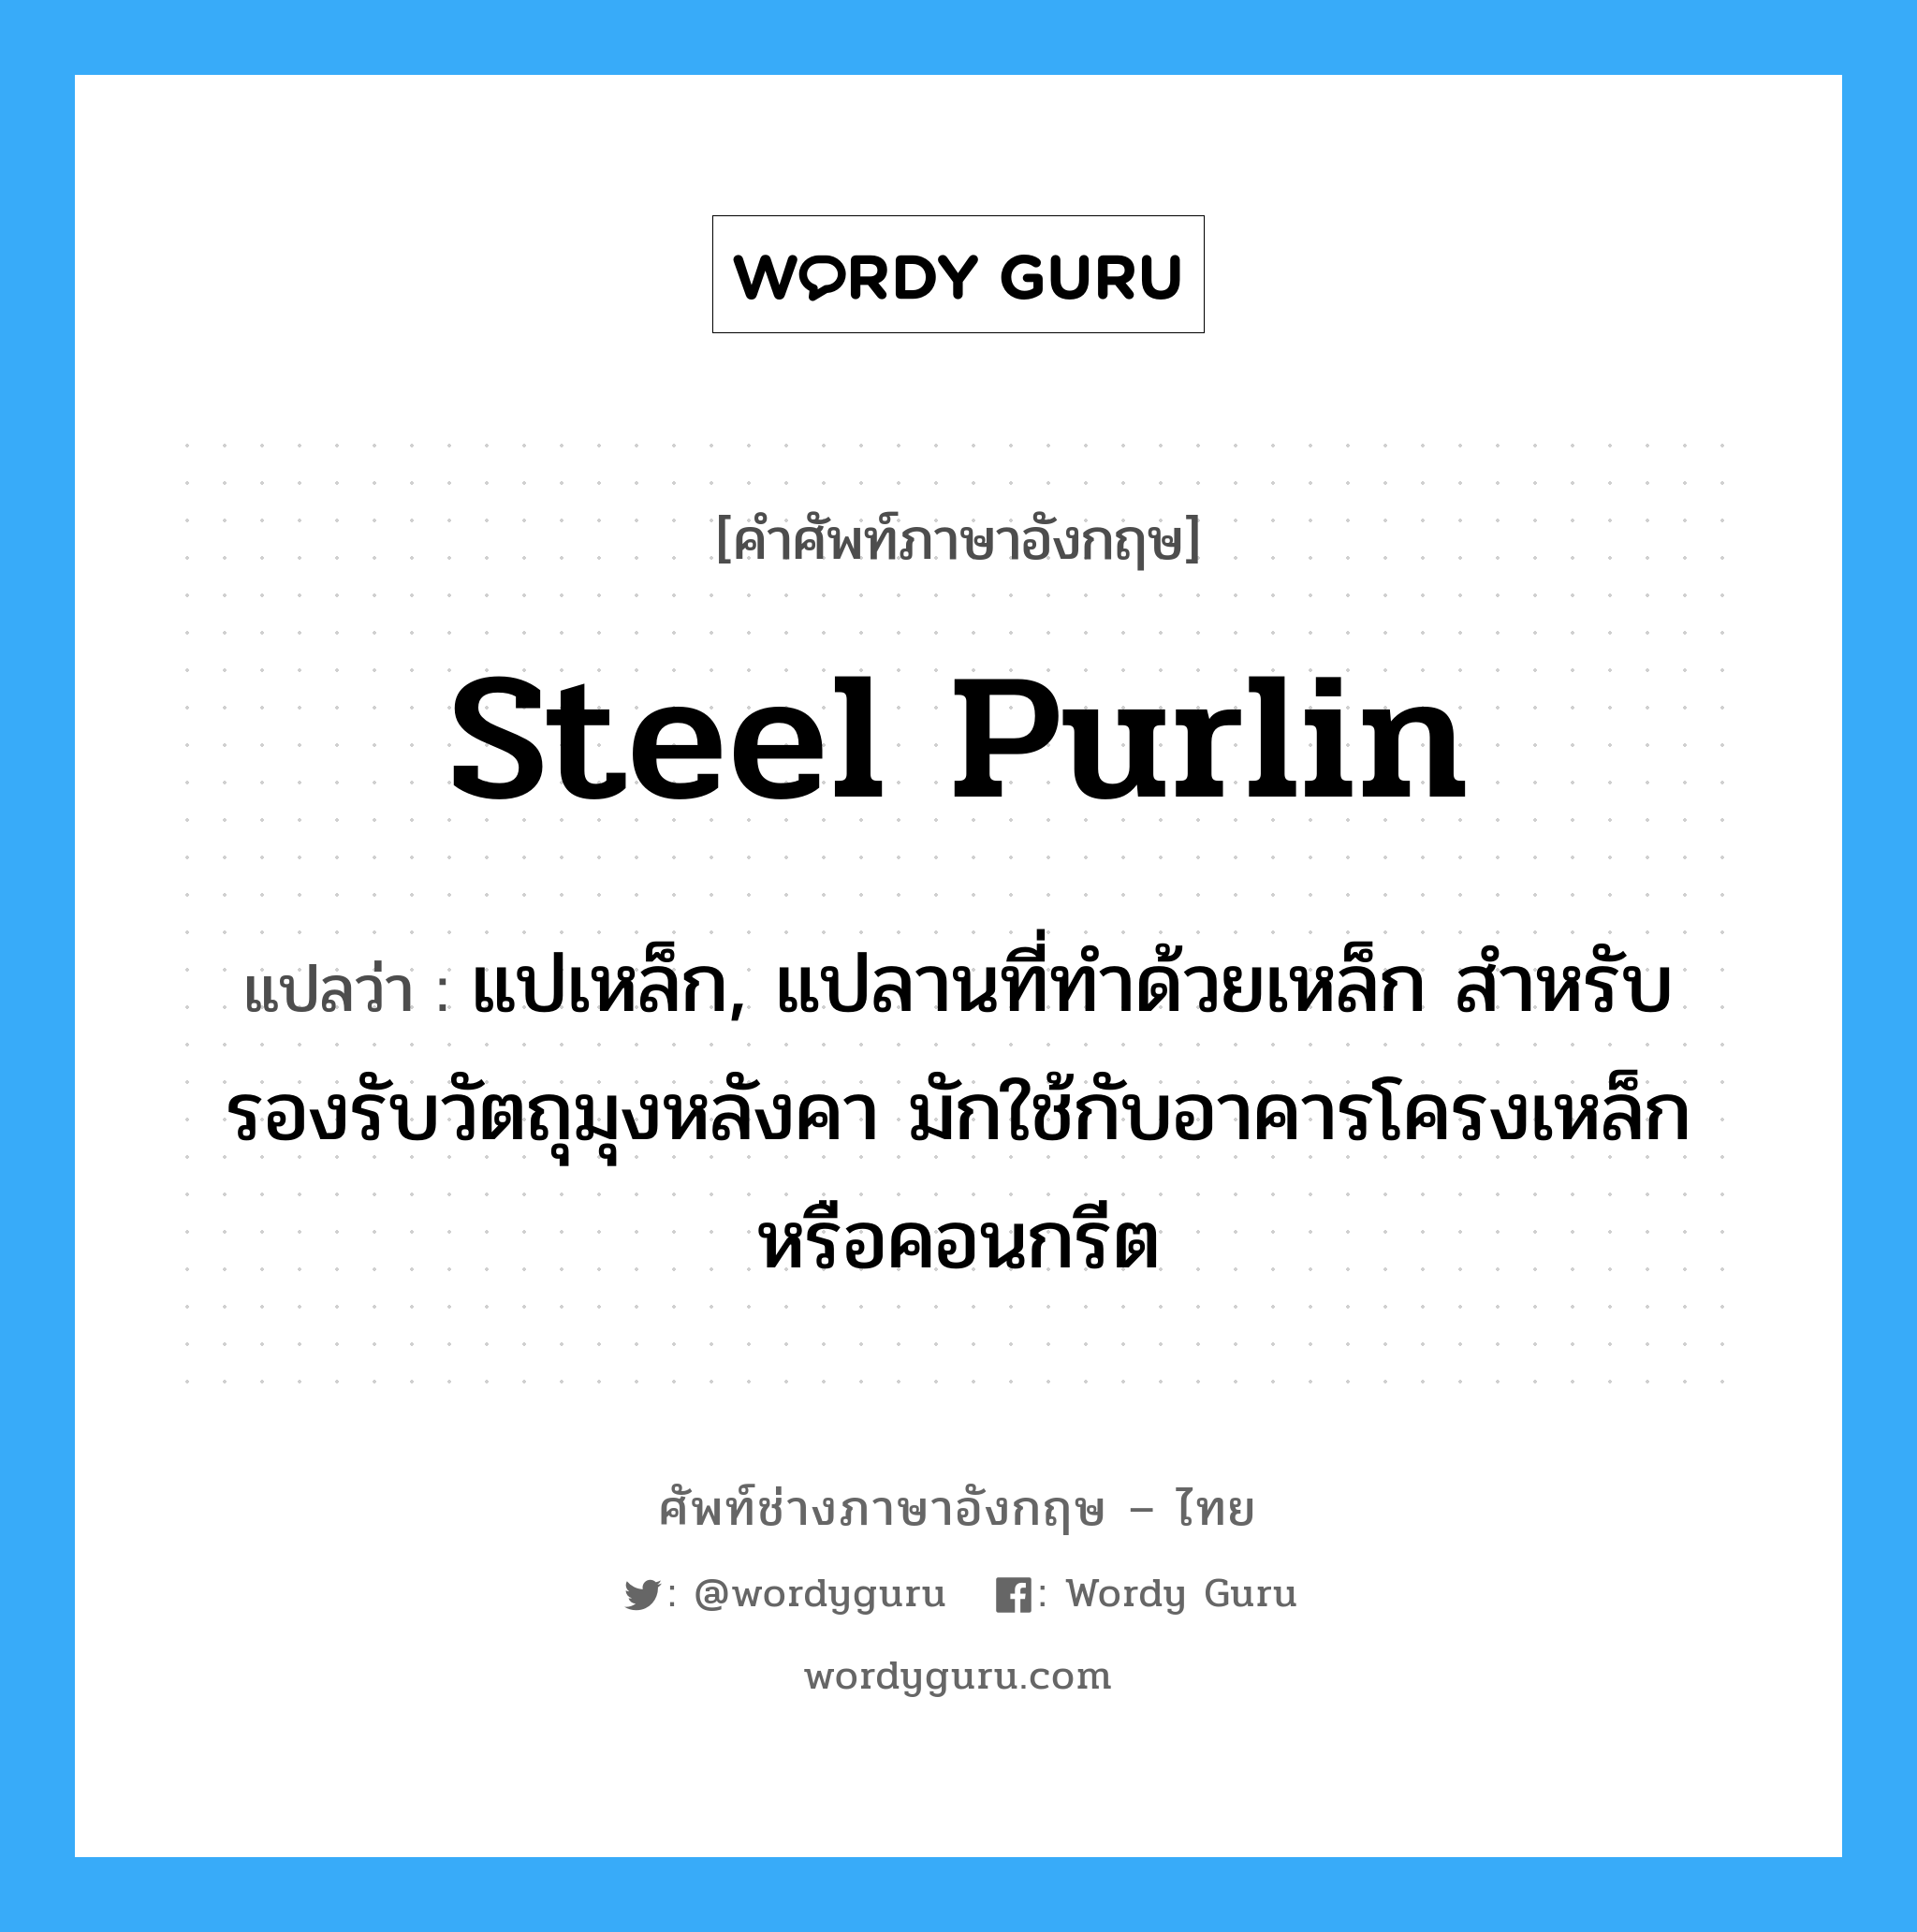 steel purlin แปลว่า?, คำศัพท์ช่างภาษาอังกฤษ - ไทย steel purlin คำศัพท์ภาษาอังกฤษ steel purlin แปลว่า แปเหล็ก, แปลานที่ทำด้วยเหล็ก สำหรับรองรับวัตถุมุงหลังคา มักใช้กับอาคารโครงเหล็กหรือคอนกรีต